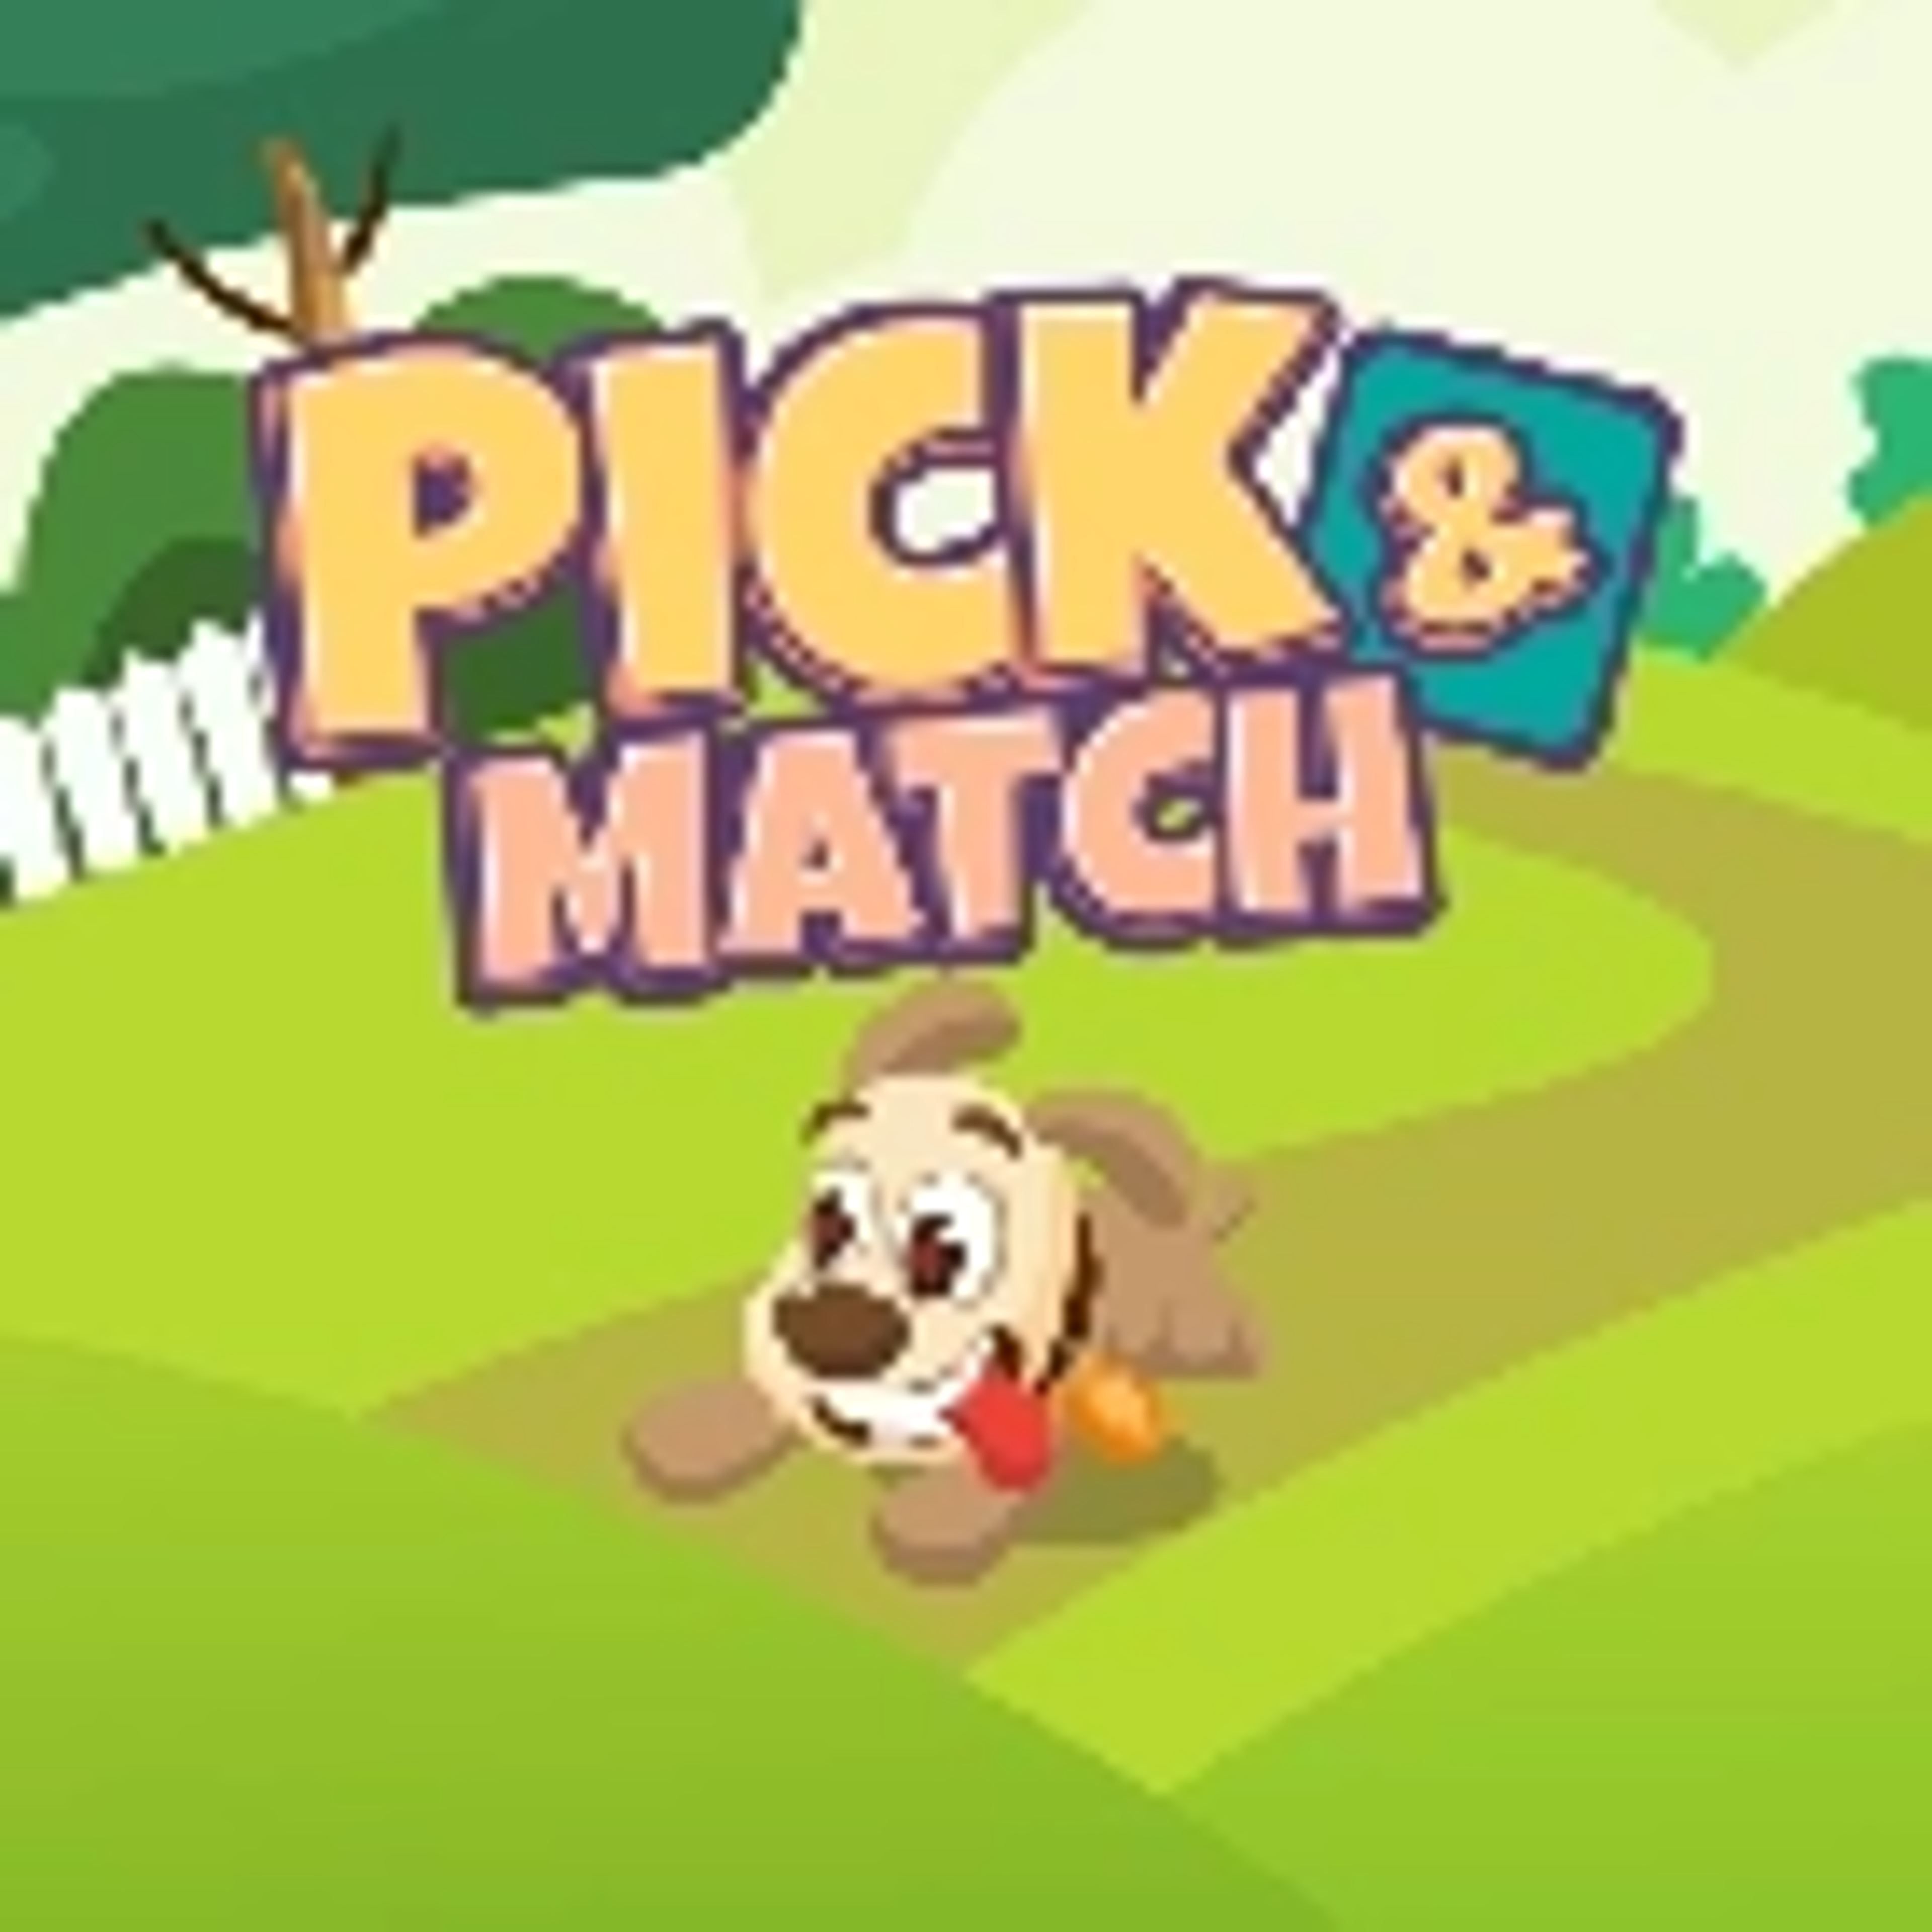 Pick & Match